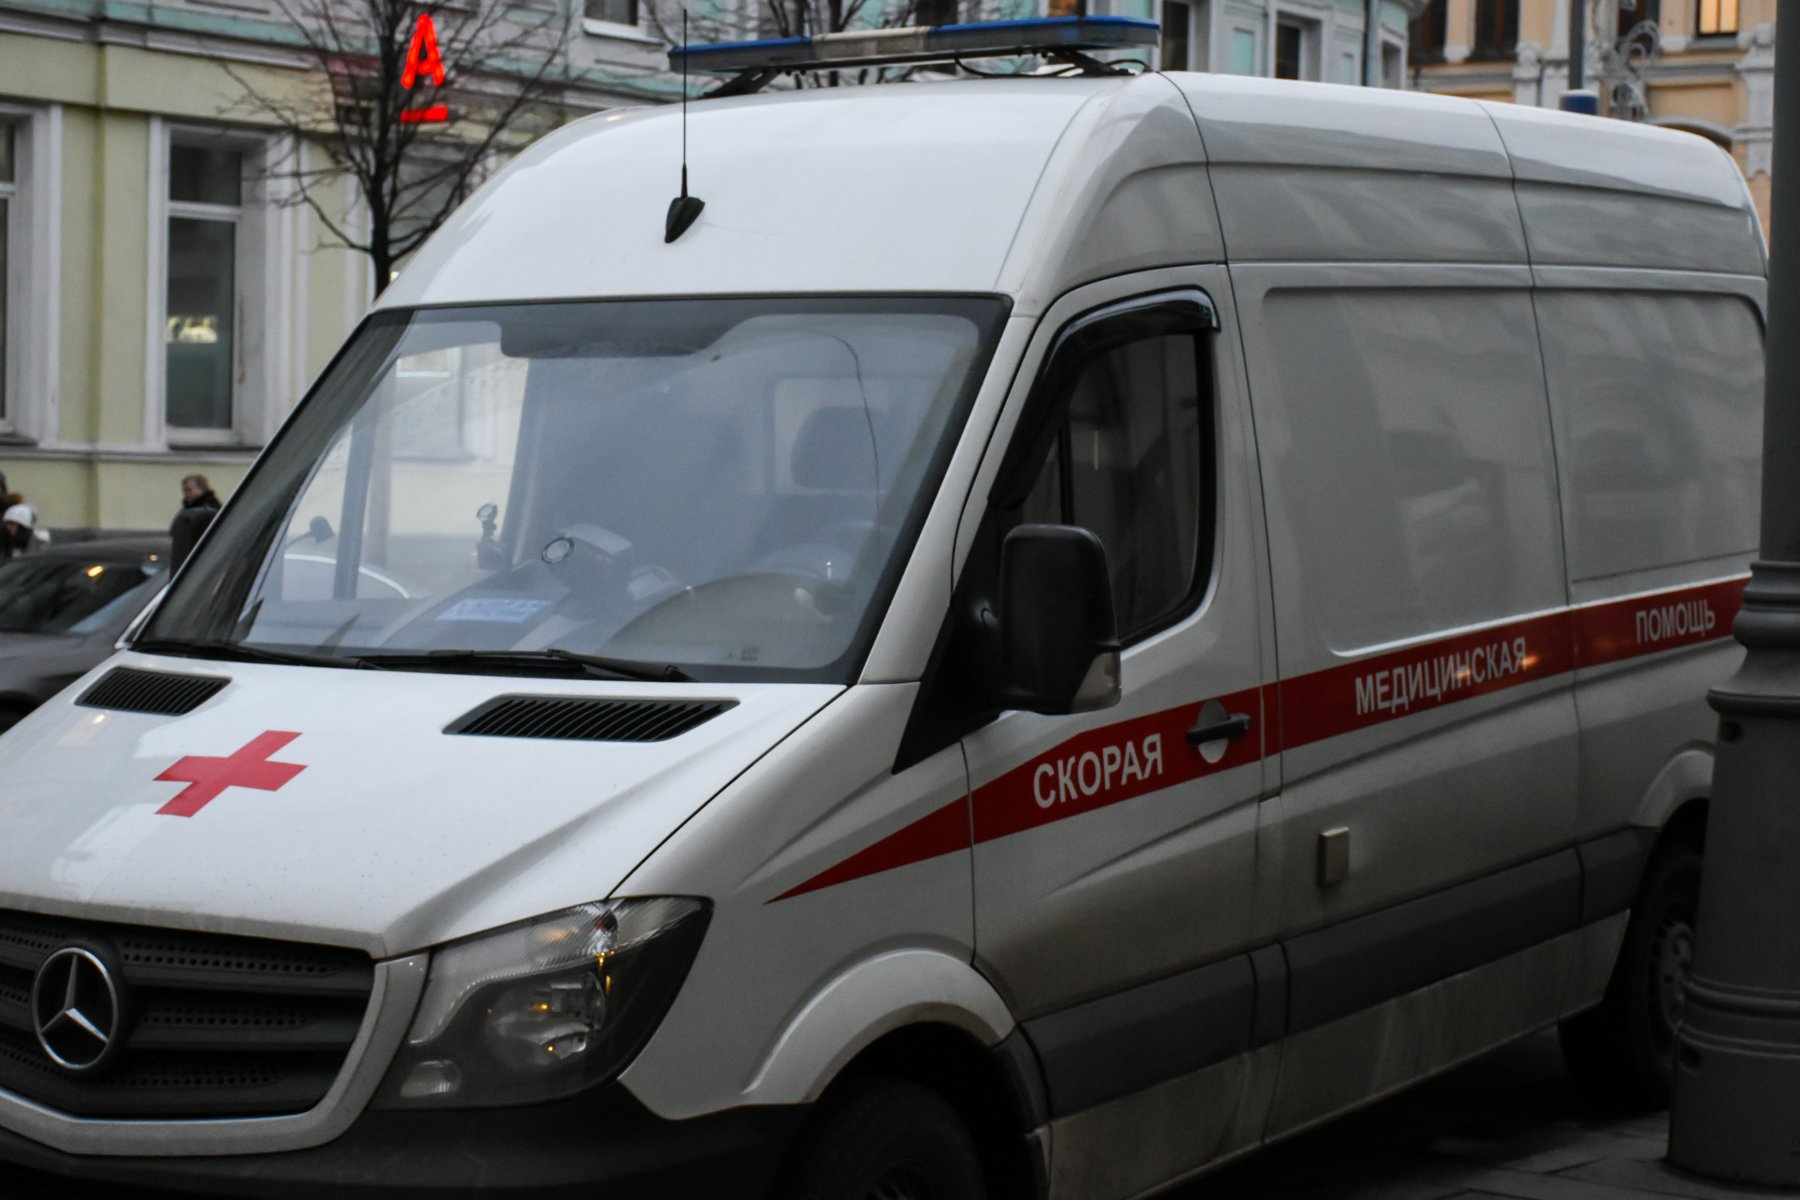 СМИ: в Домодедово злоумышленник плеснул кислотой на людей в подъезде  